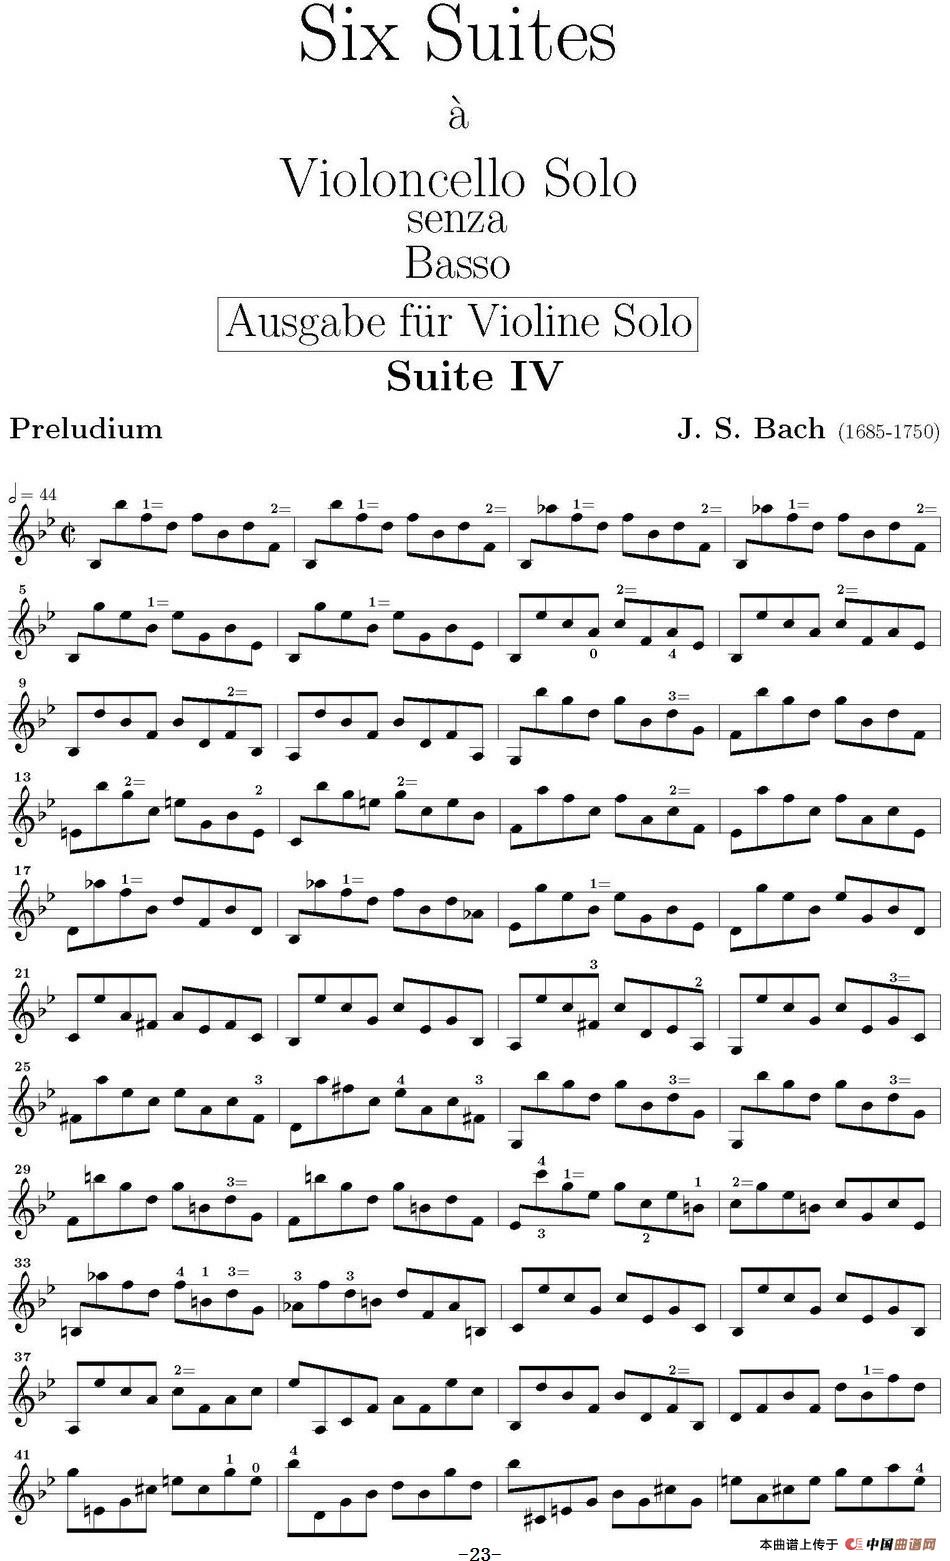 Six Suite Violincello Solo senza Basso（Suite IV）（6首无伴